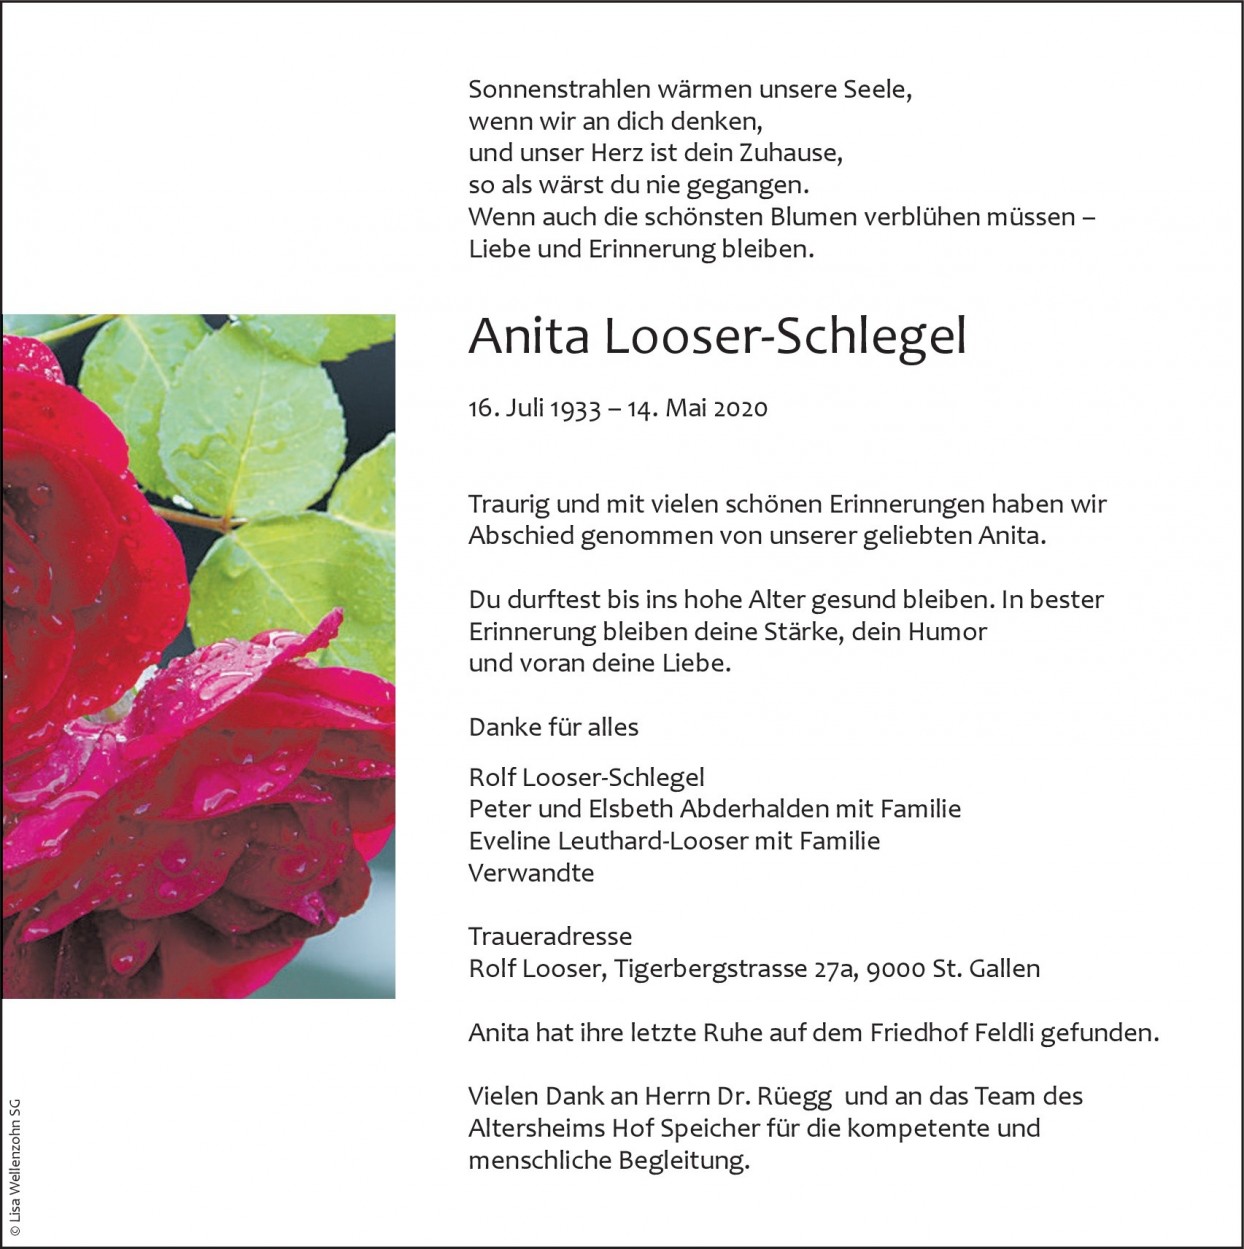 Anita Looser-Schlegel